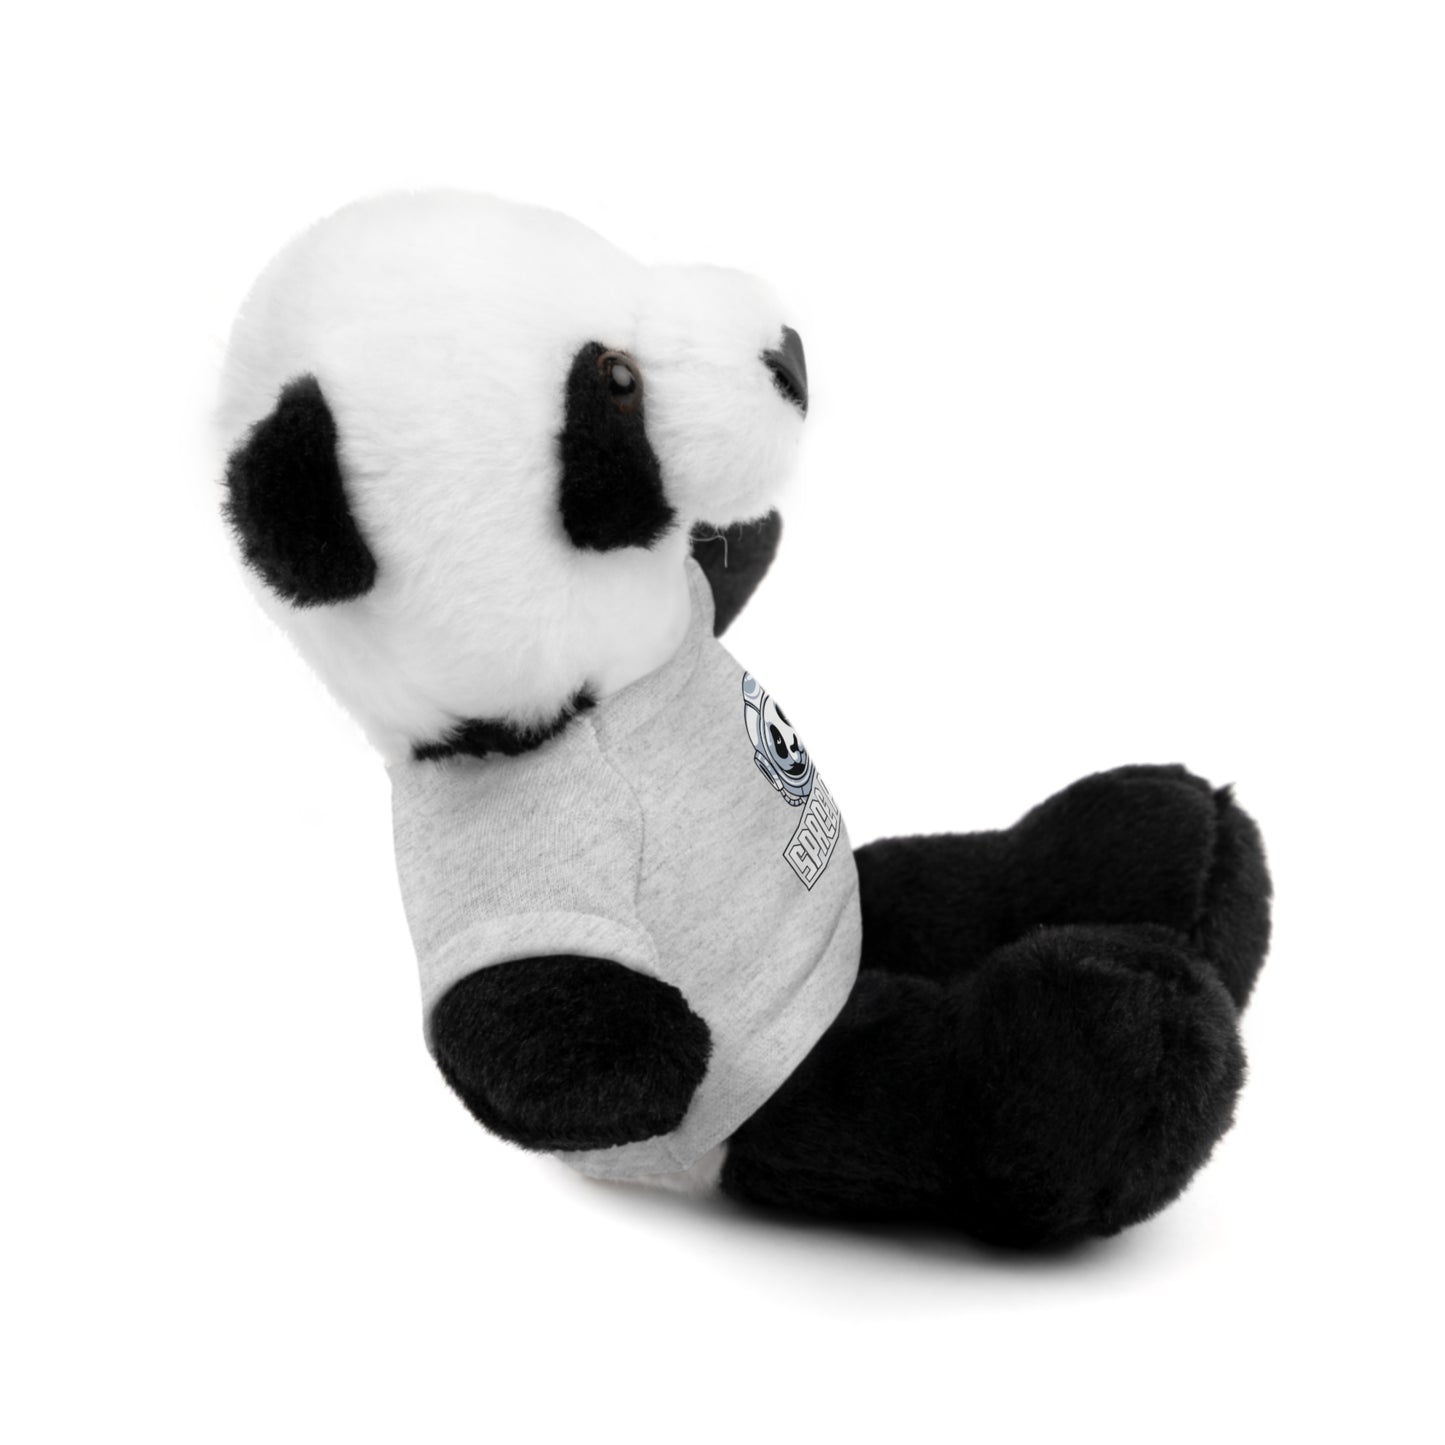 Space Panda Plushie